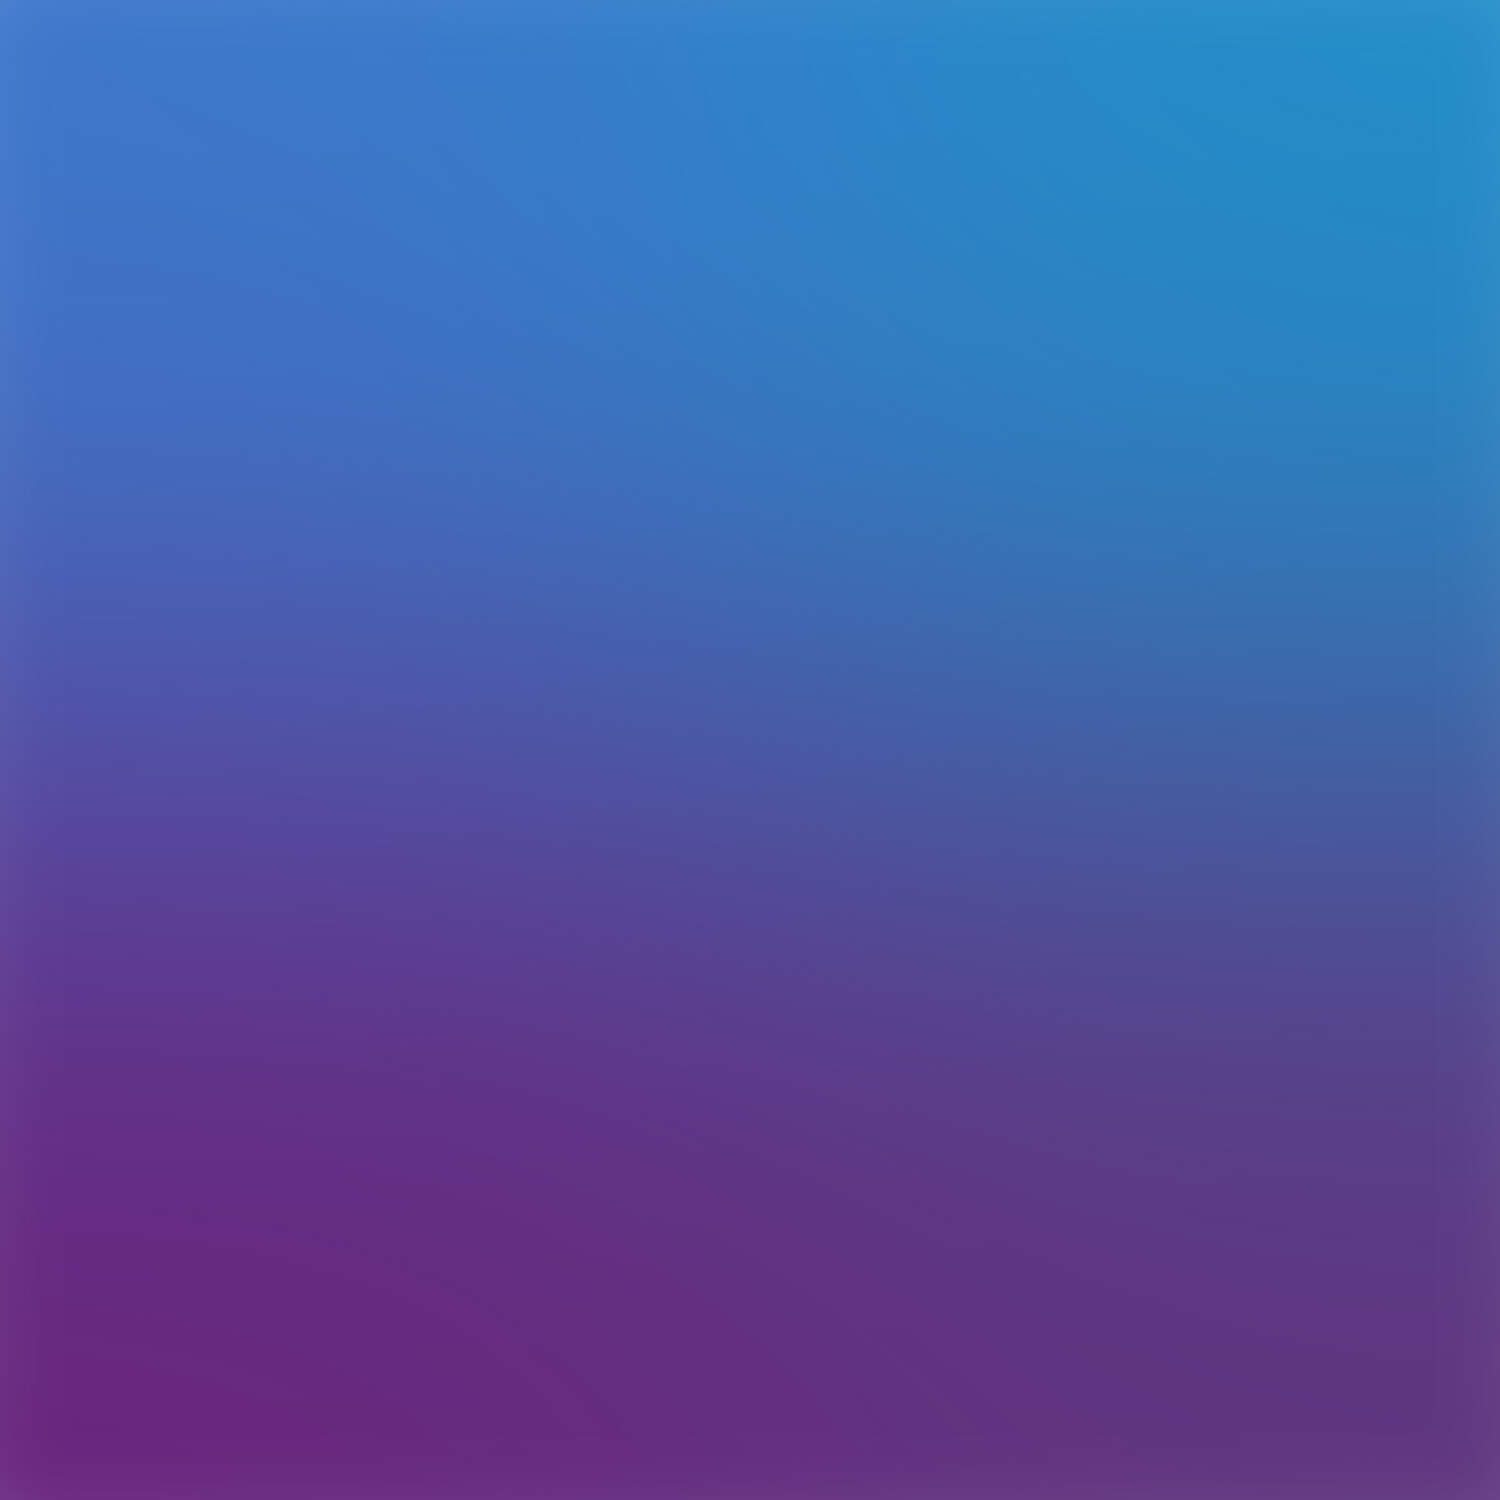 Purple & Blue. | Reimagine